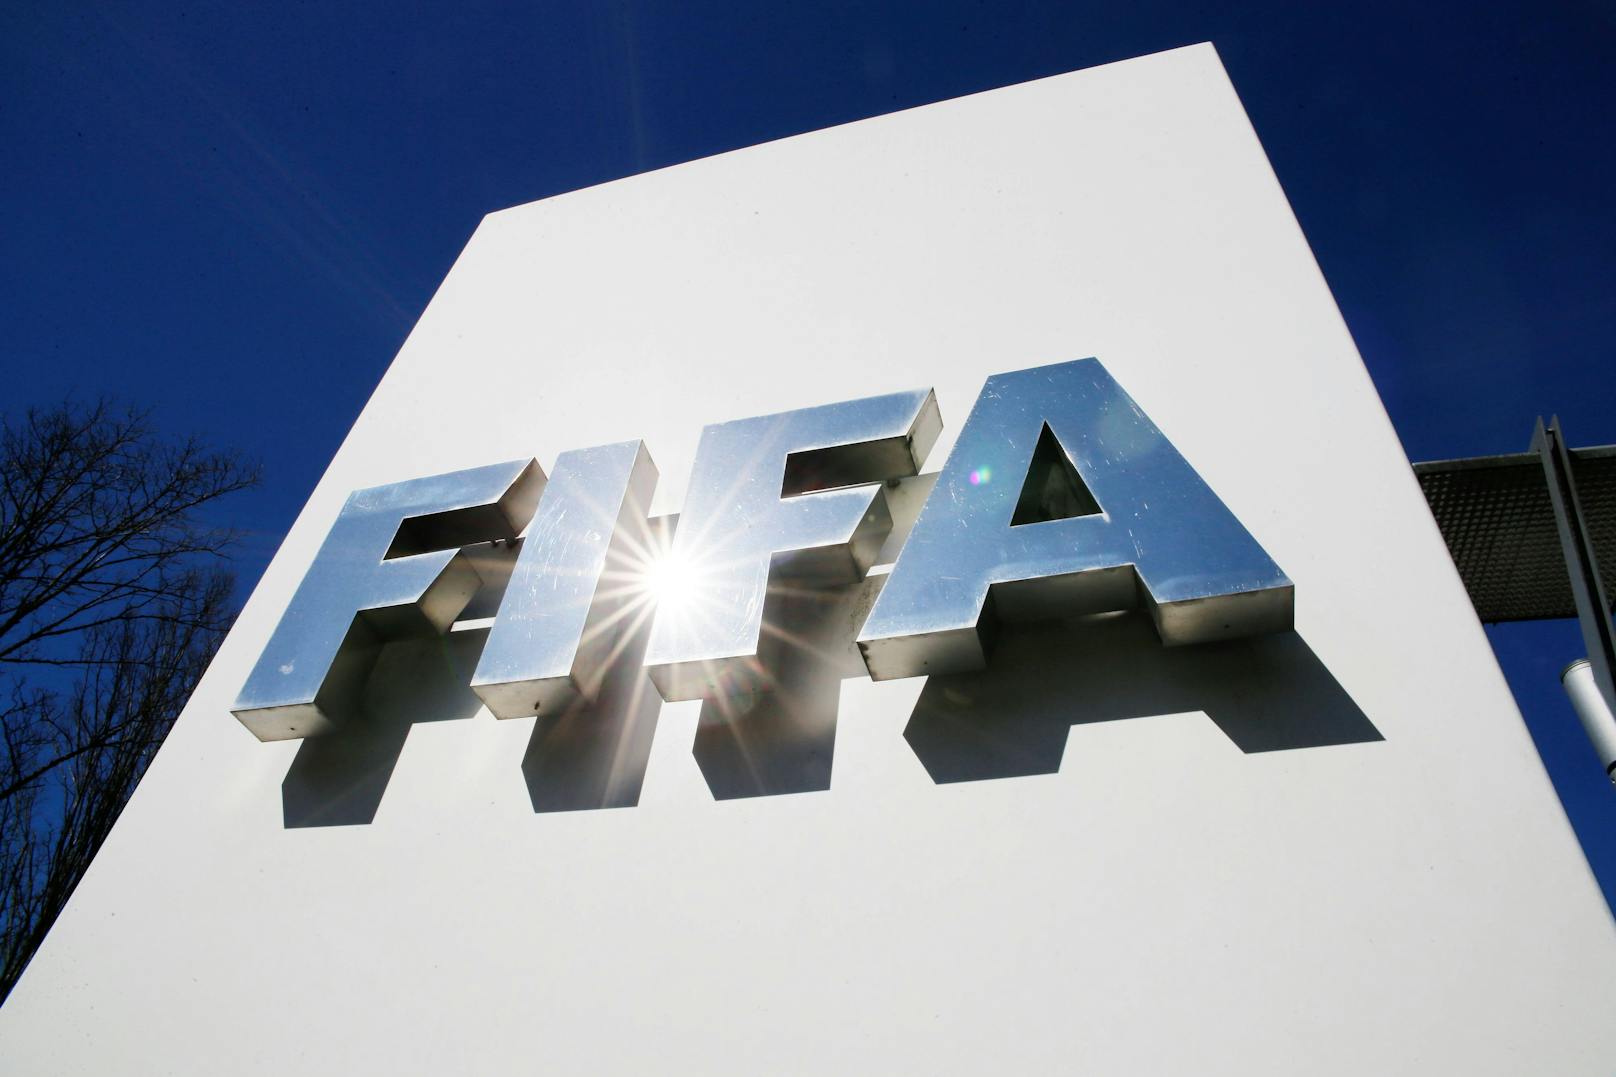 Paukenschlag! FIFA entzieht Gastgeber die WM